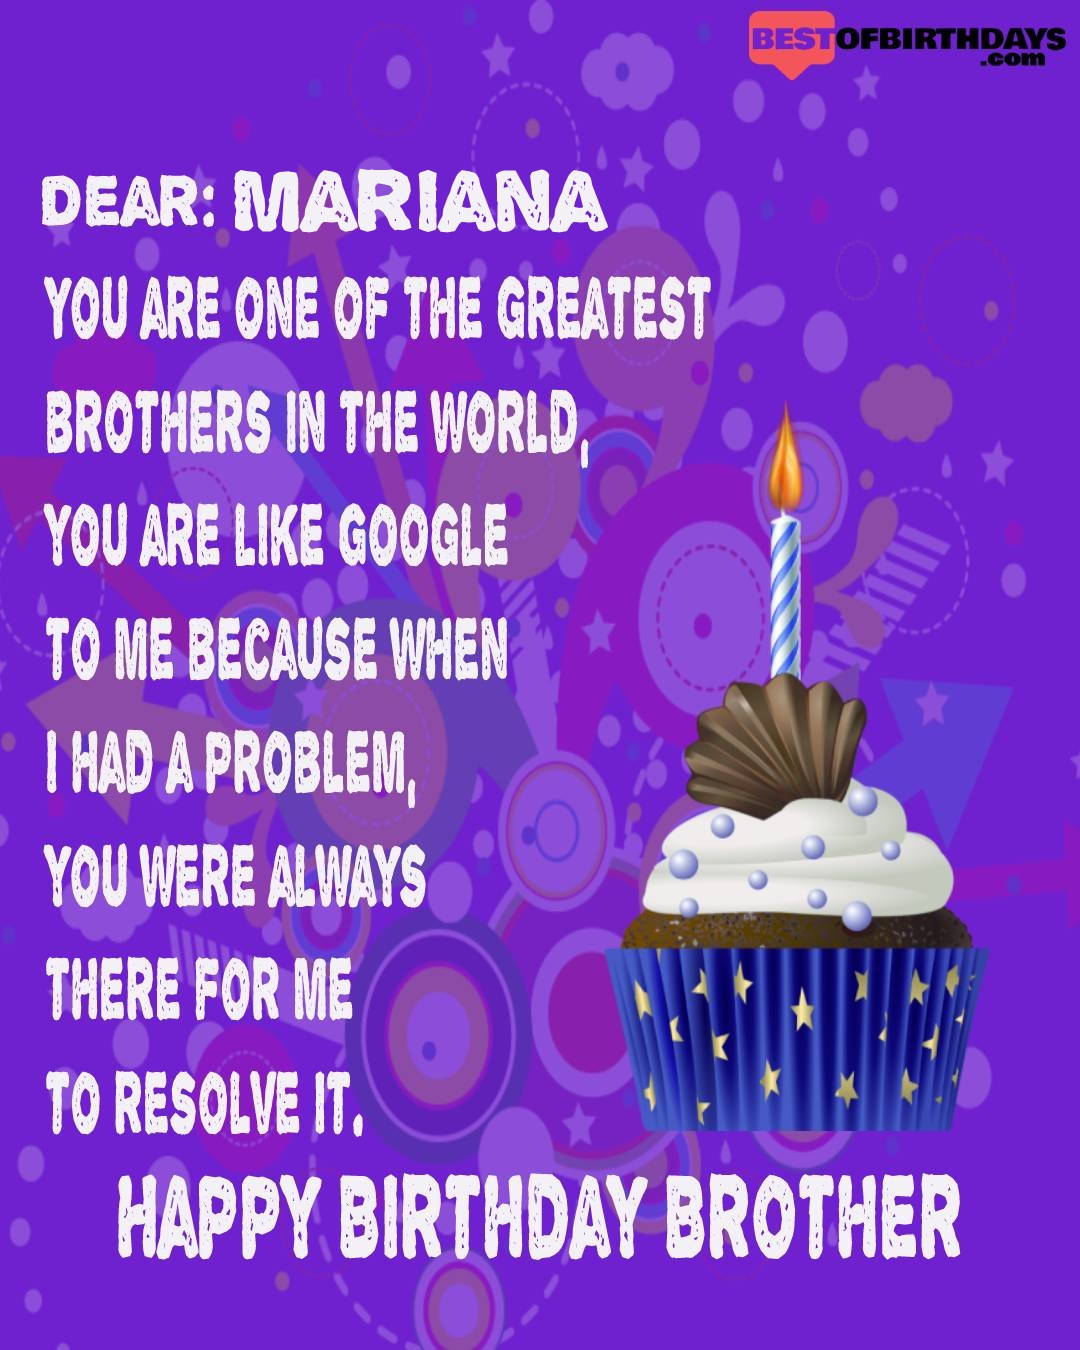 Happy birthday mariana bhai brother bro